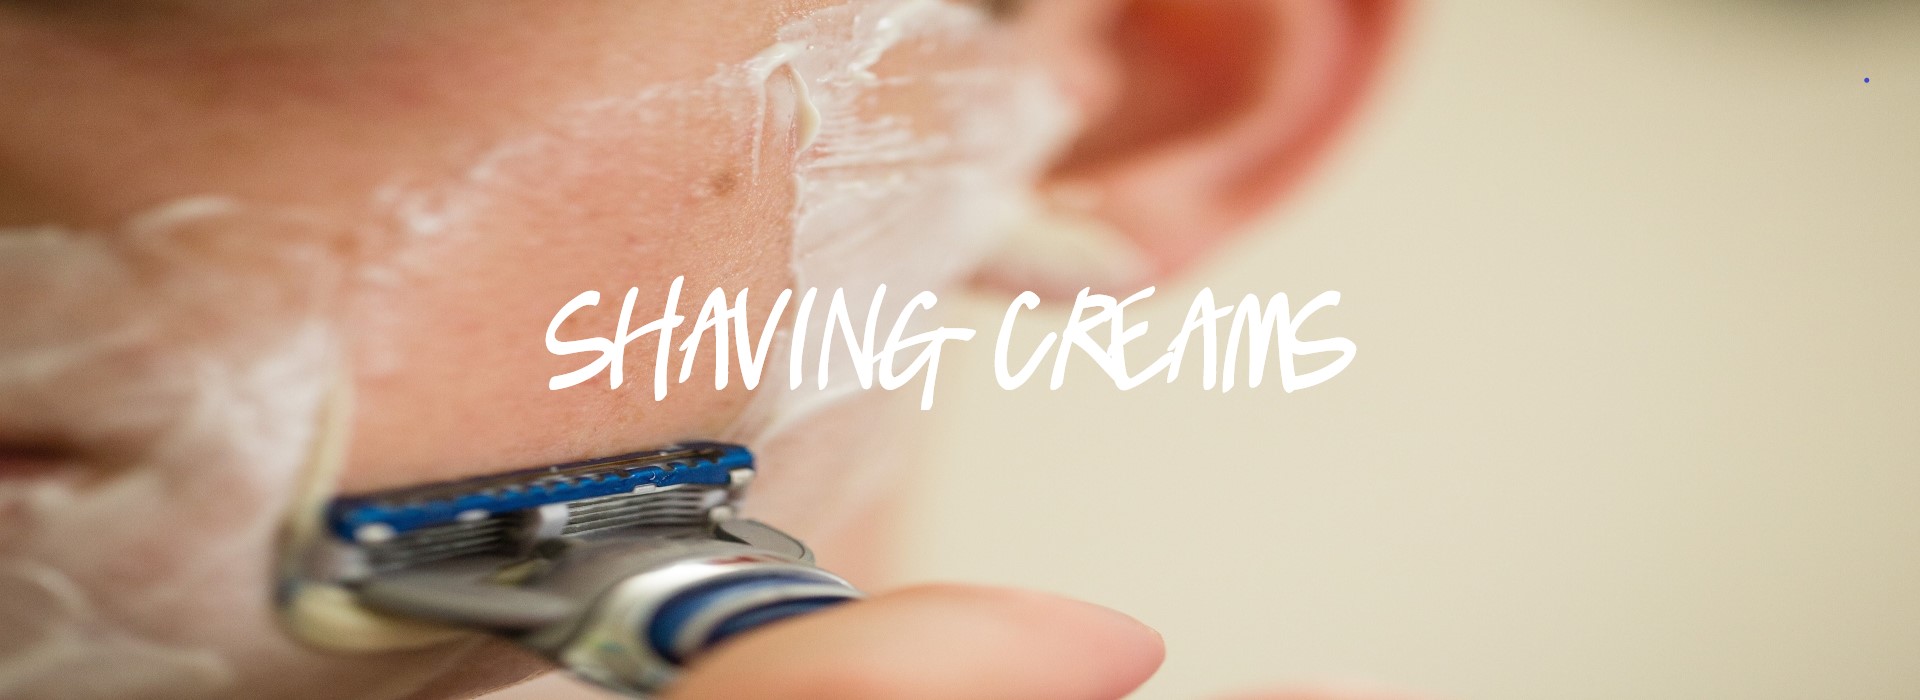 Shaving Creams